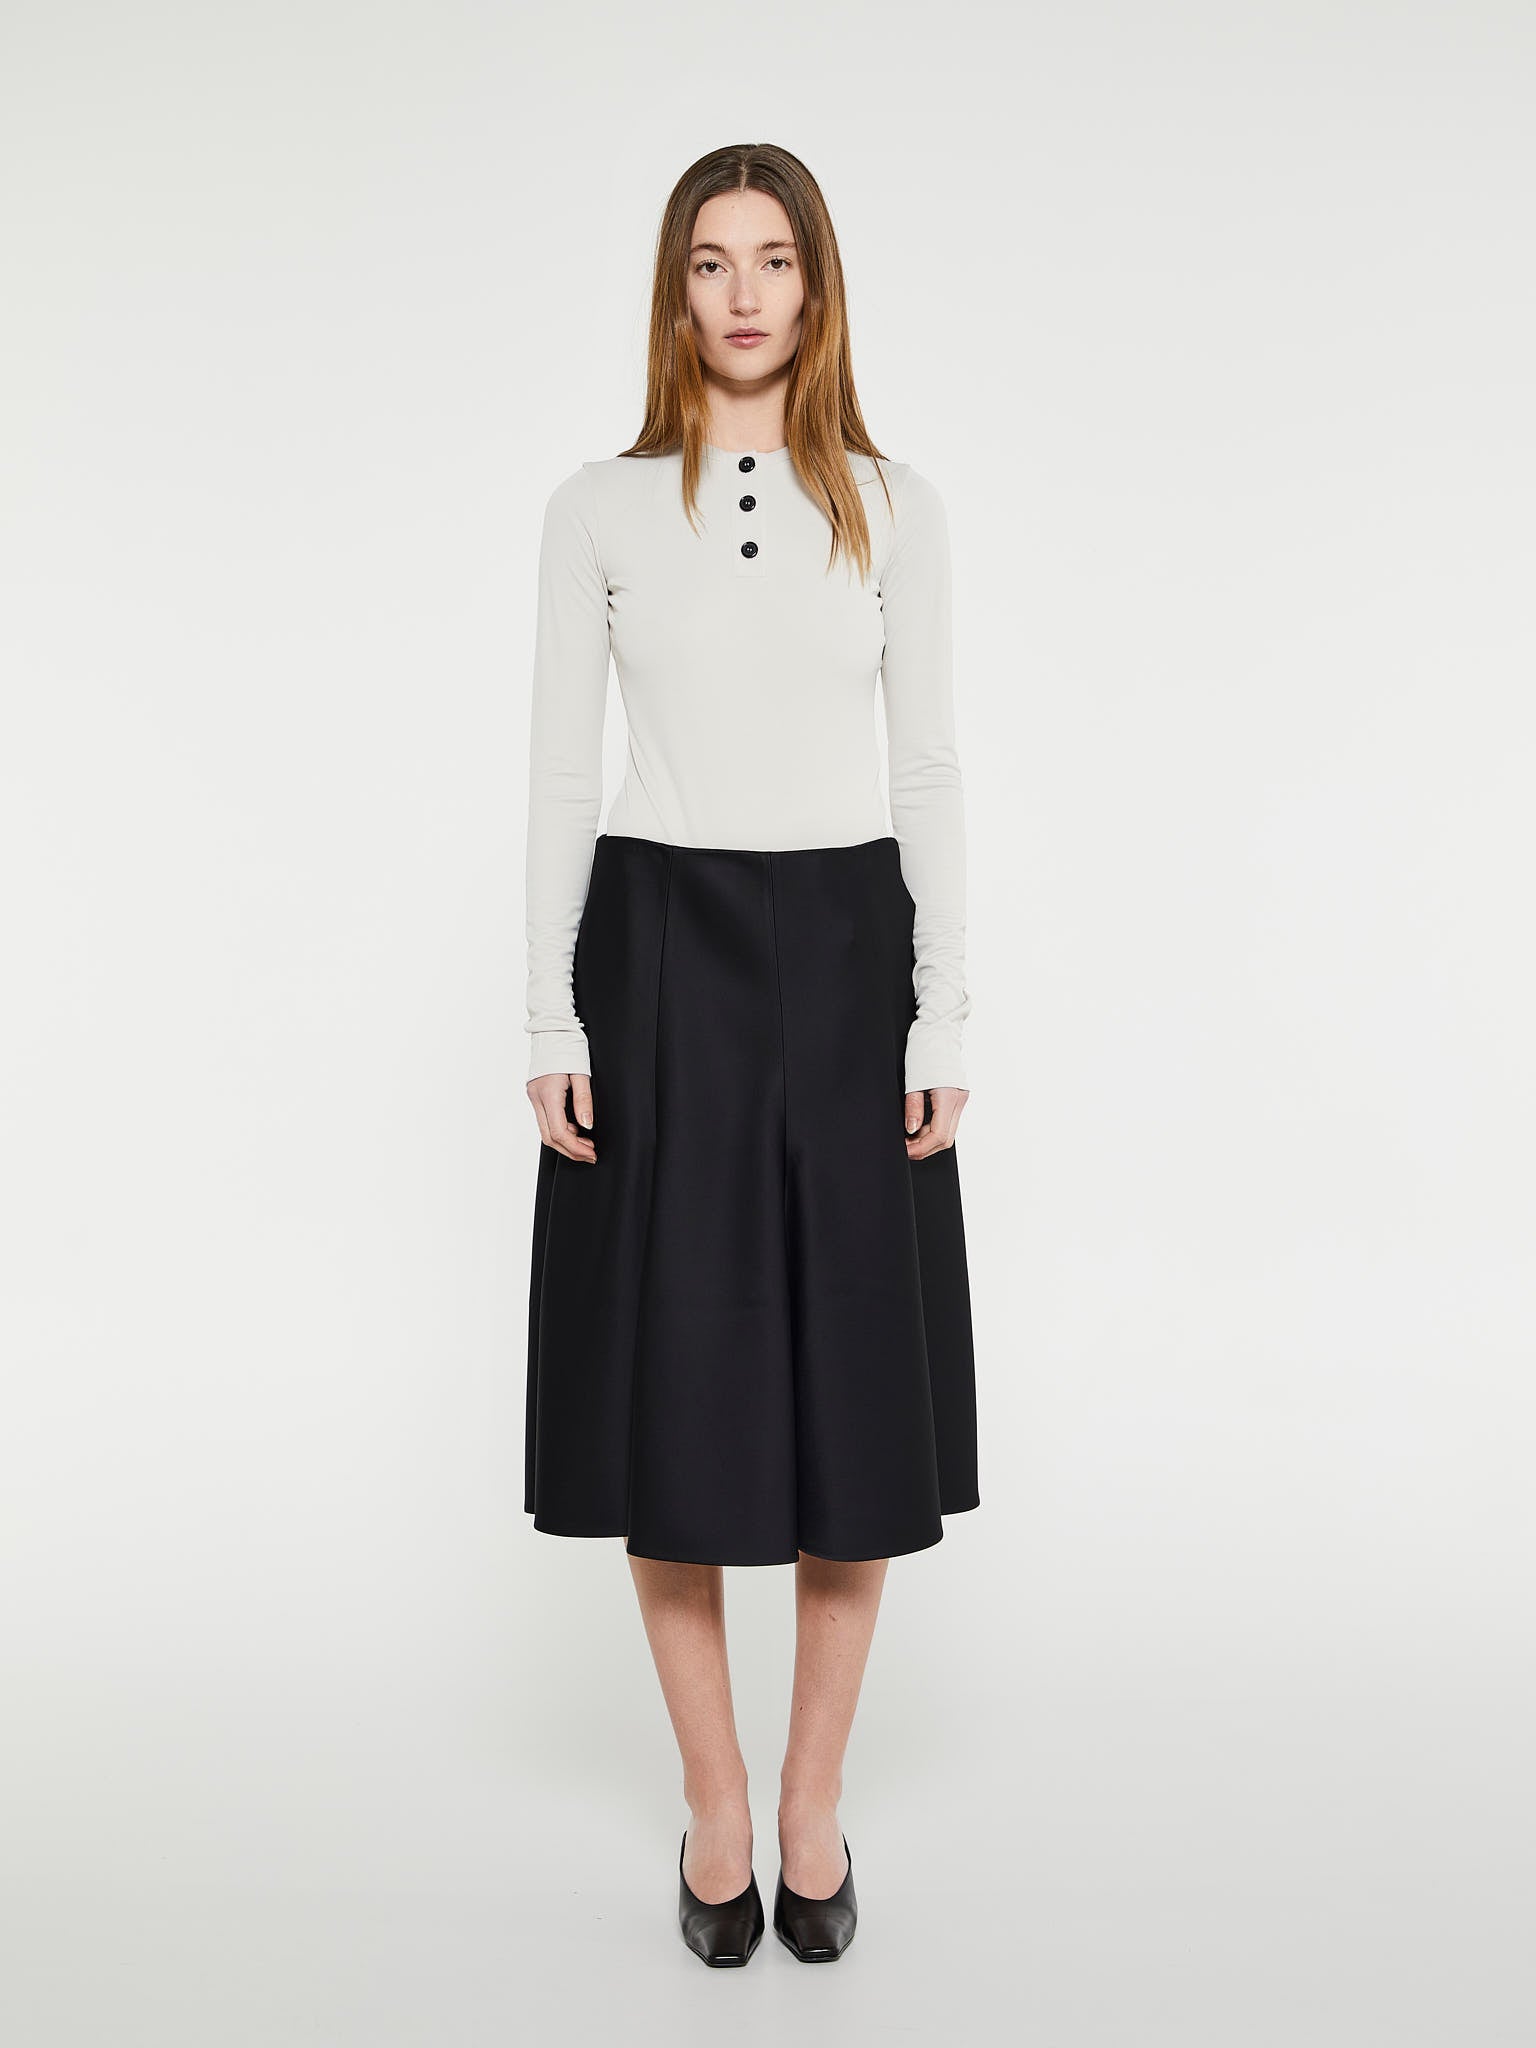 Khaite - Lennox Skirt in Black